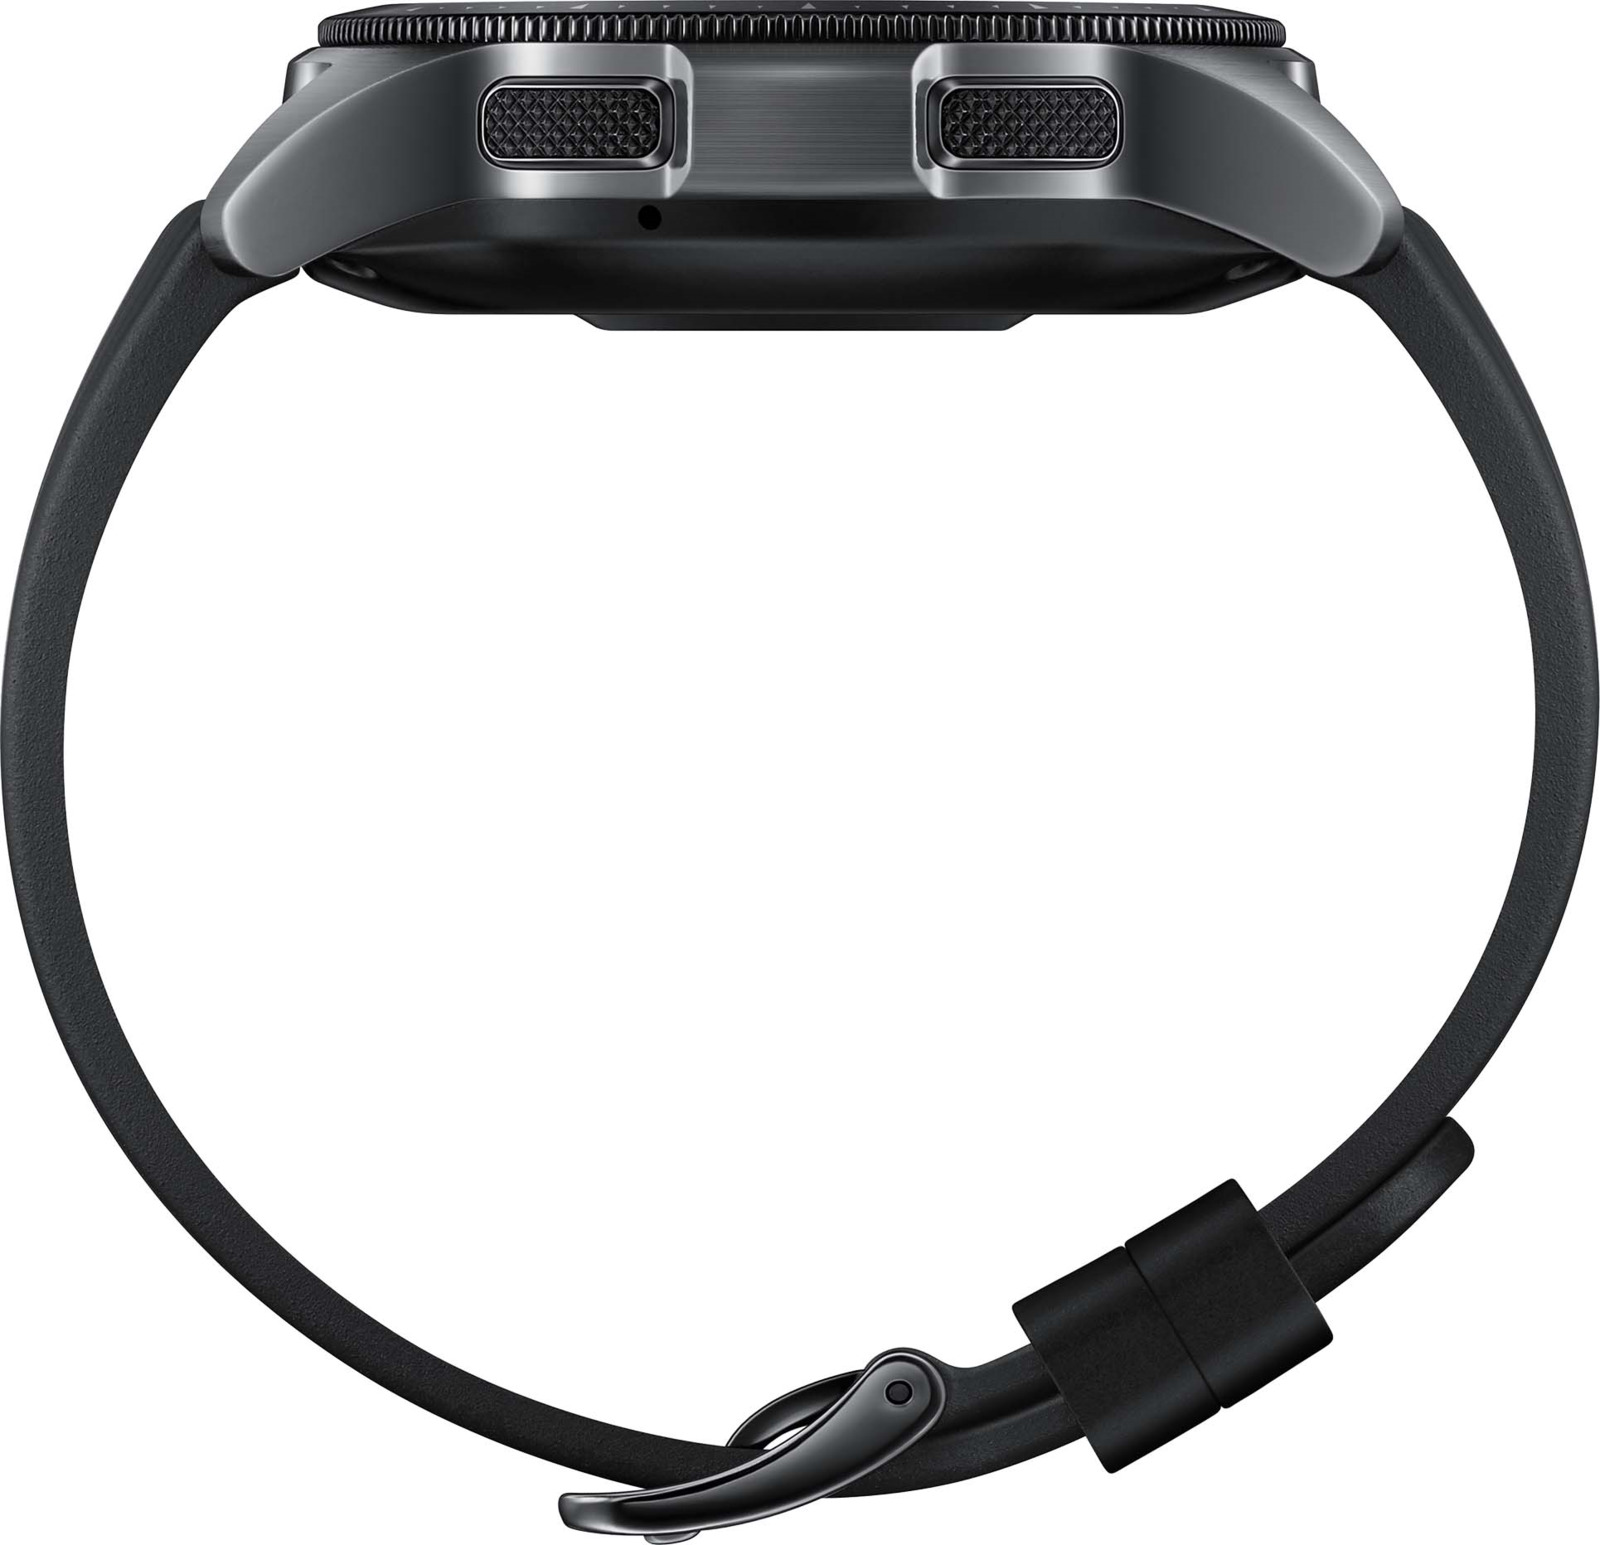 фото Умные часы Samsung Galaxy Watch, 42 мм, черный